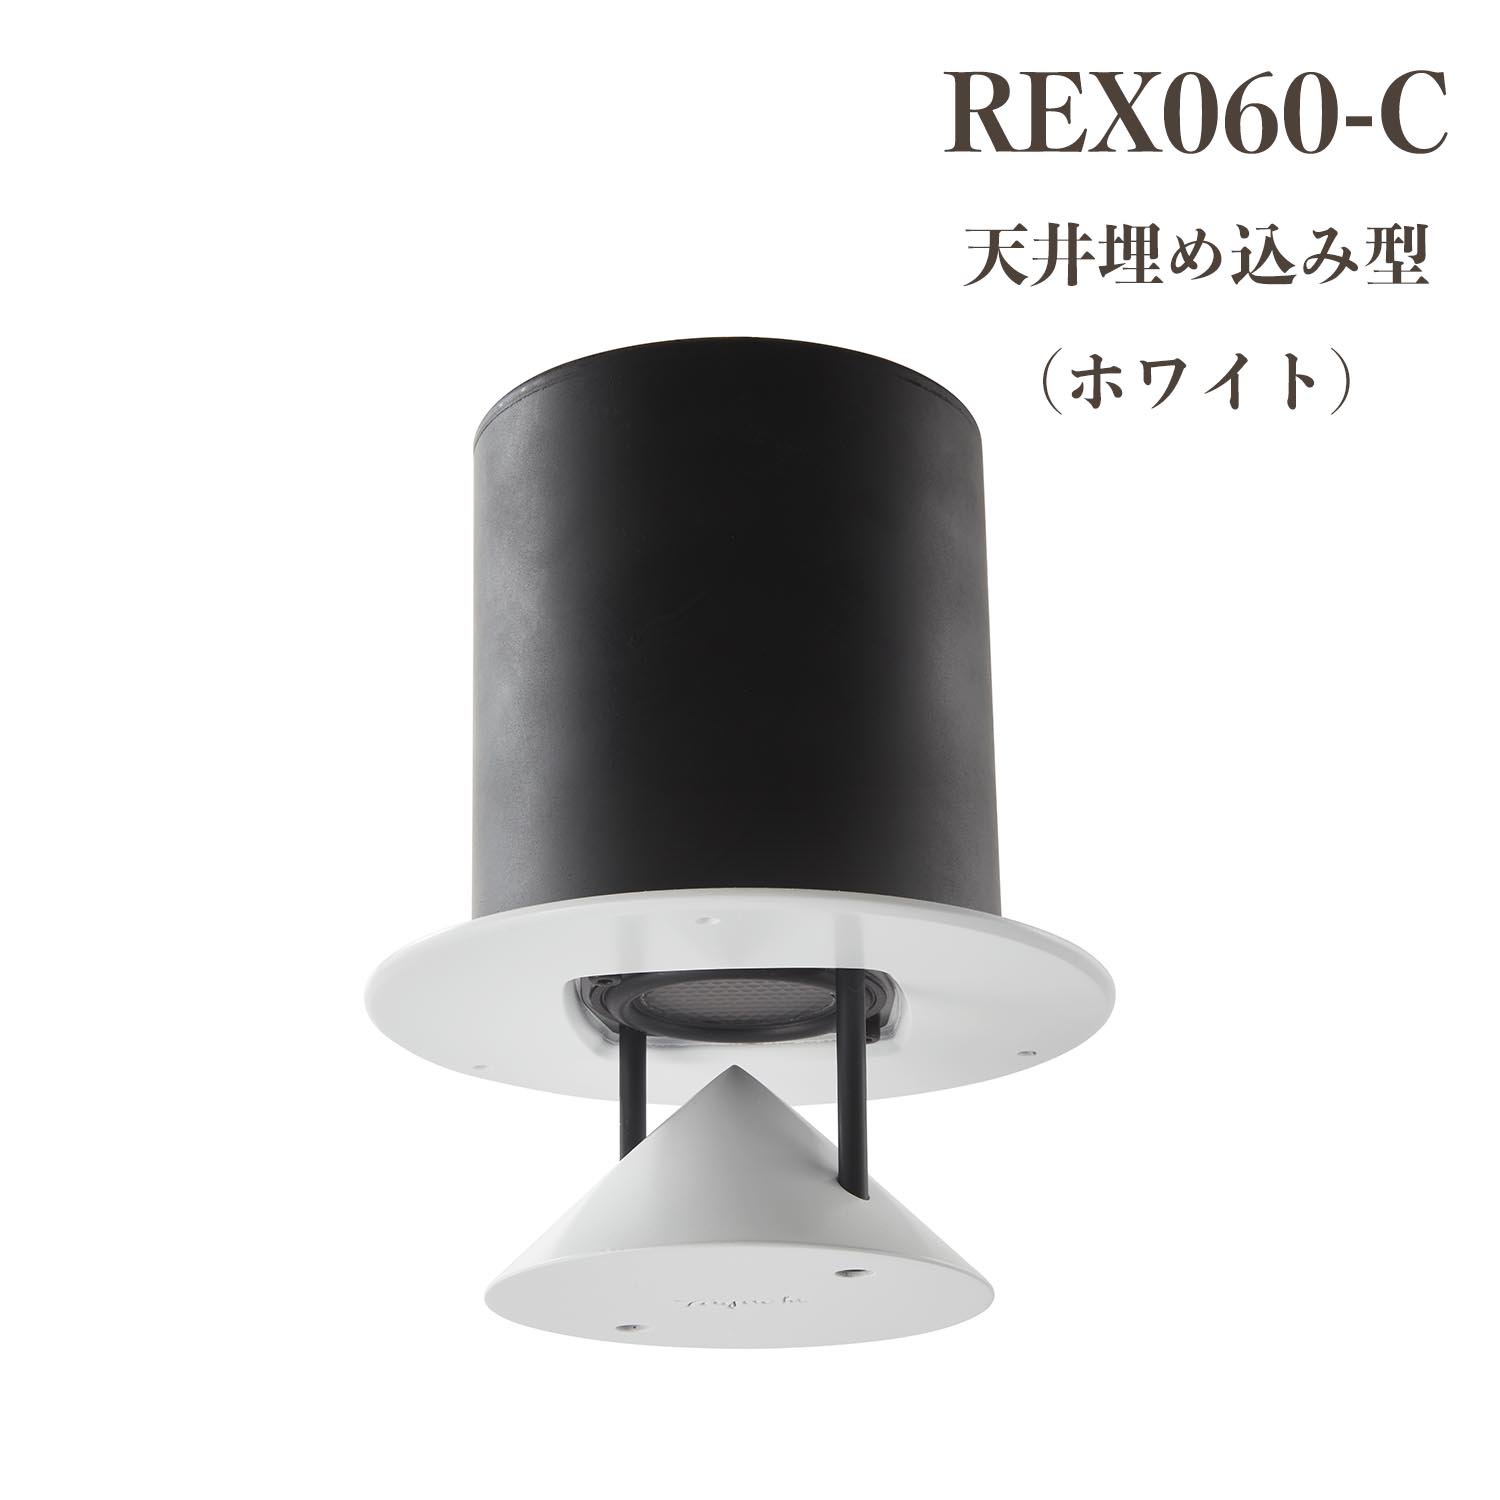 REX060-C